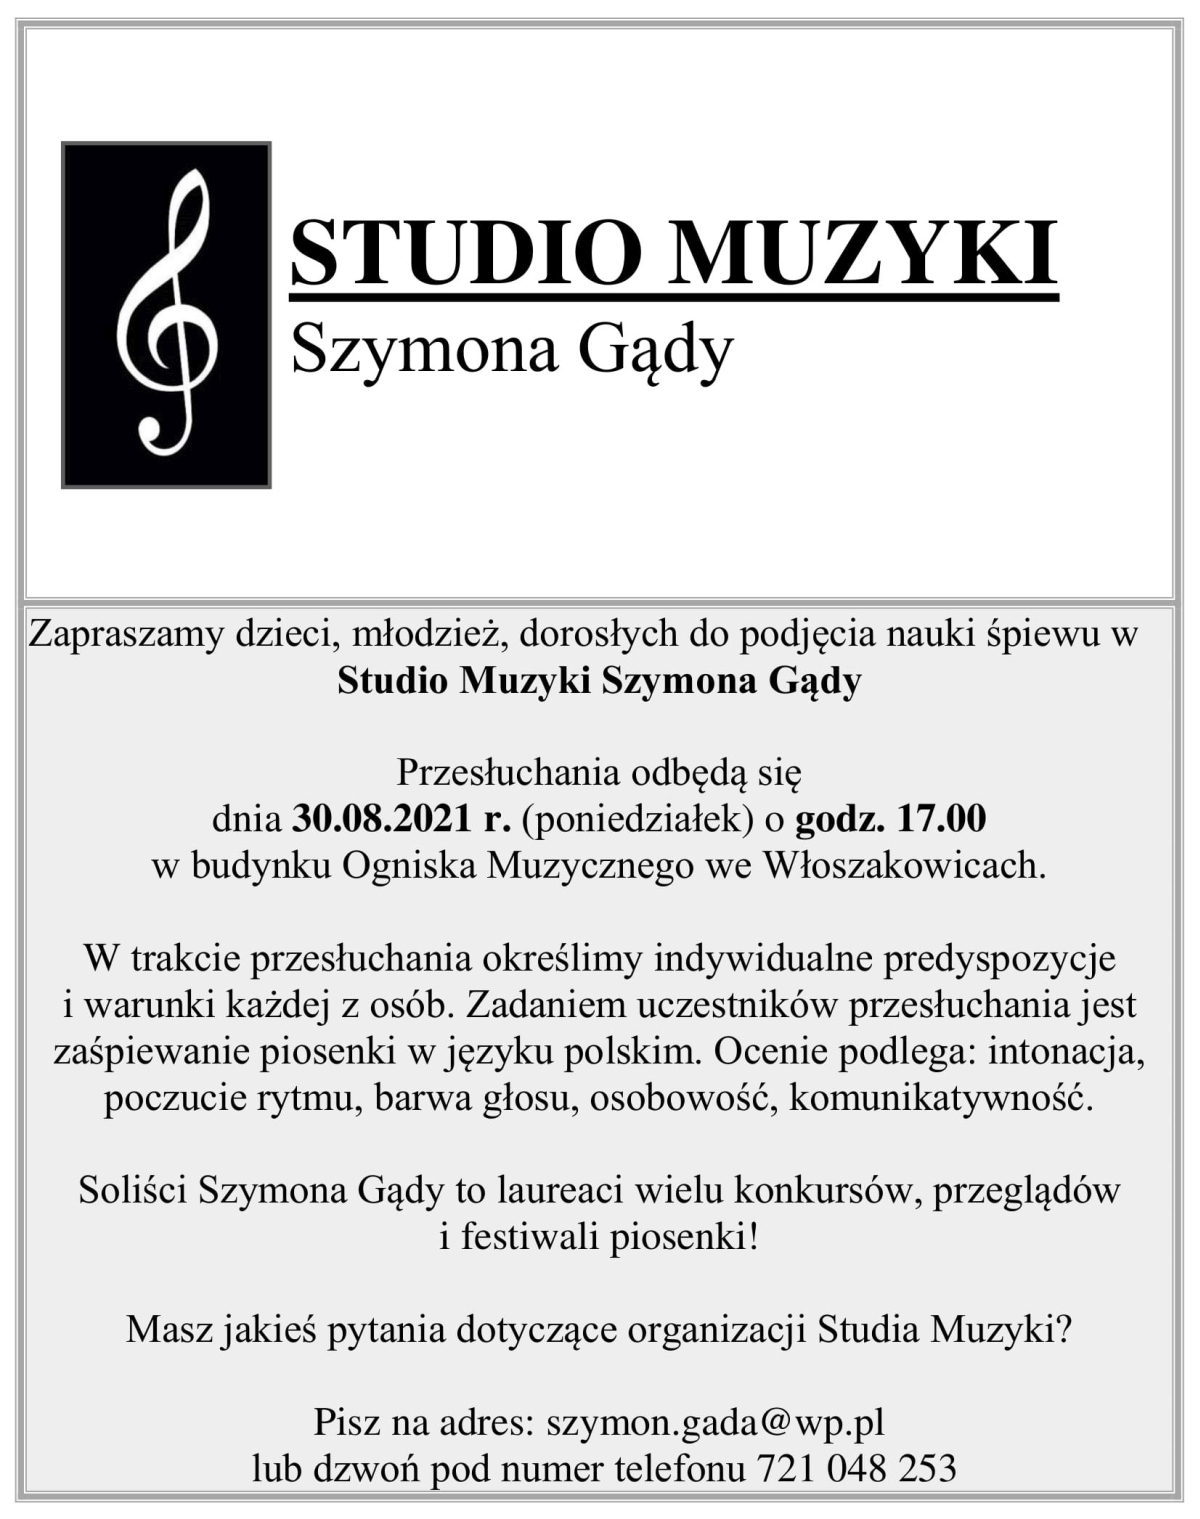 Plakat promujący przesłuchania w Studiu Muzyki Szymona Gądy